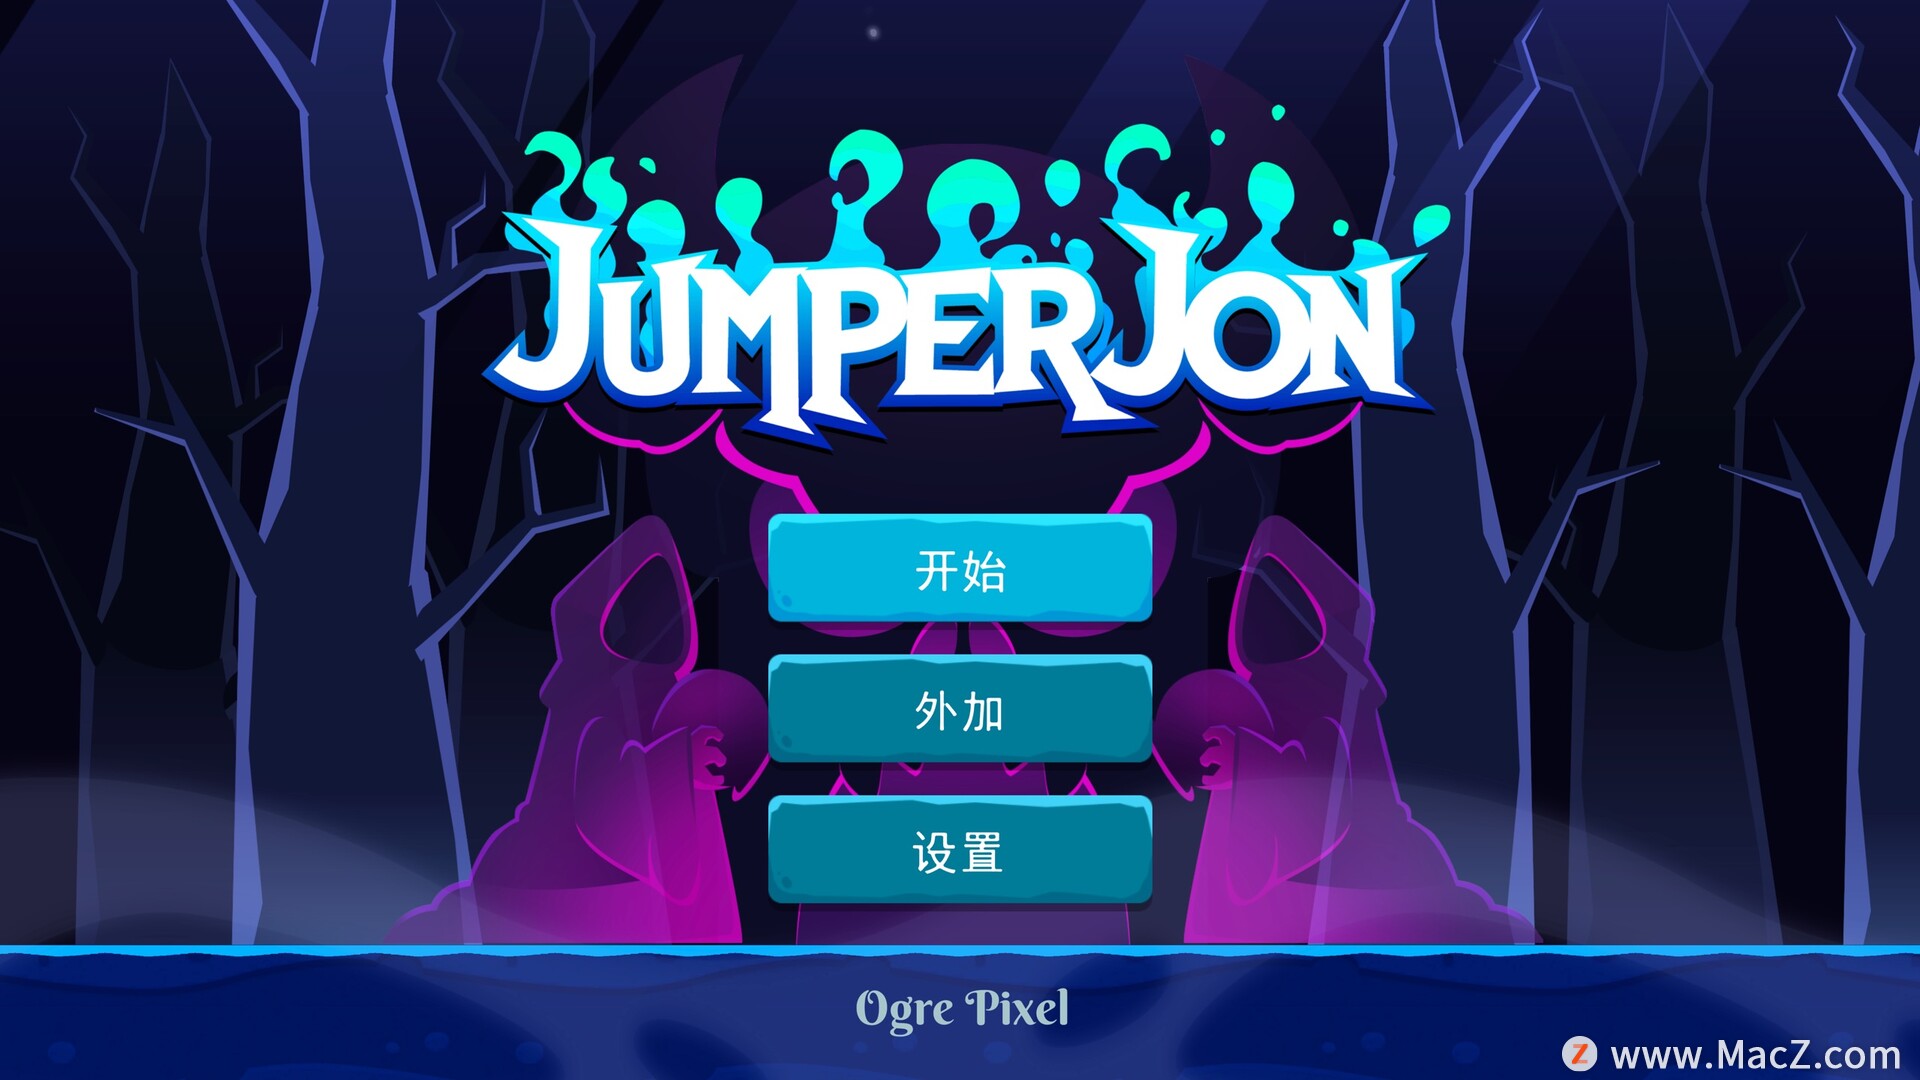 跳跃者乔恩Jumper Jon for mac(30秒冒险游戏)  207.67 MB 简体中文